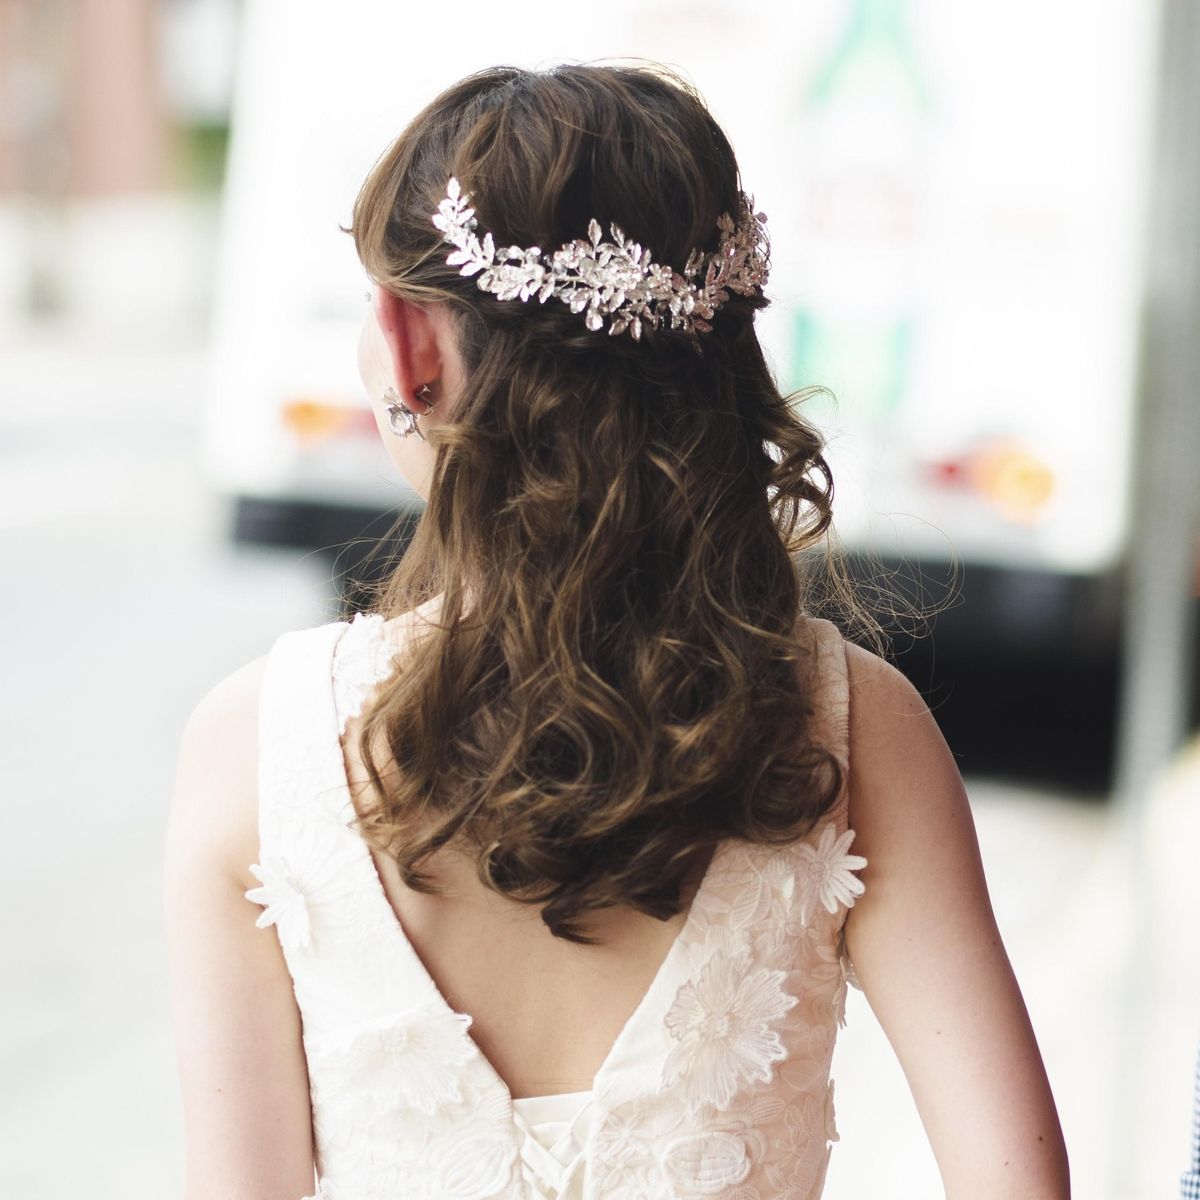 ミディアム 花嫁の髪型23選 実はアレンジ自在のヘアスタイルって知ってた 結婚式準備はウェディングニュース